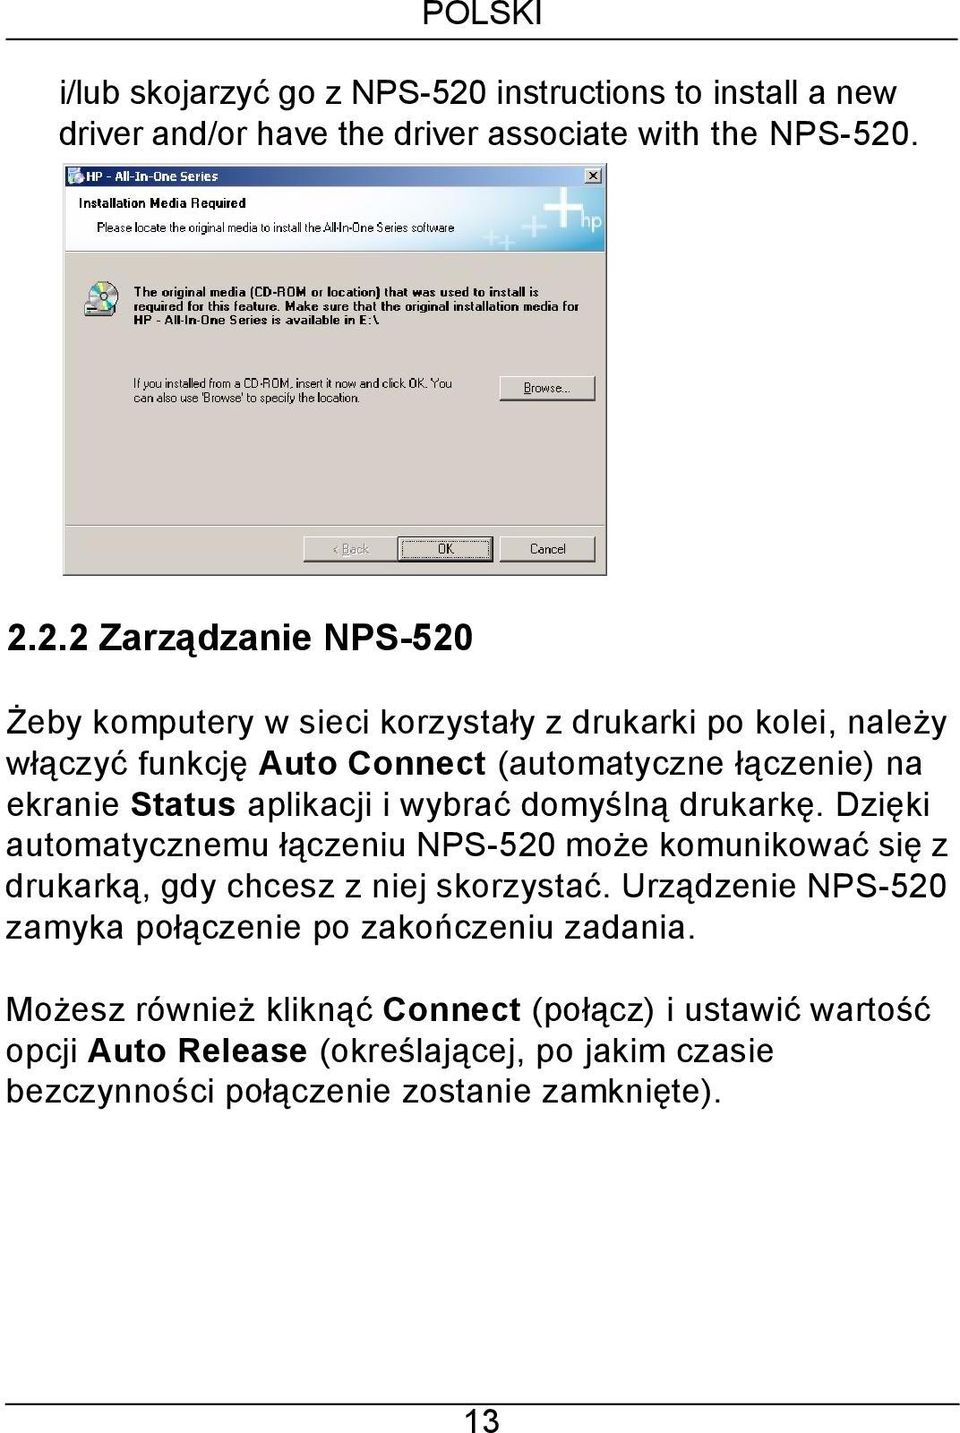 . 2.2.2 Zarządzanie NPS-520 Żeby komputery w sieci korzystały z drukarki po kolei, należy włączyć funkcję Auto Connect (automatyczne łączenie) na ekranie